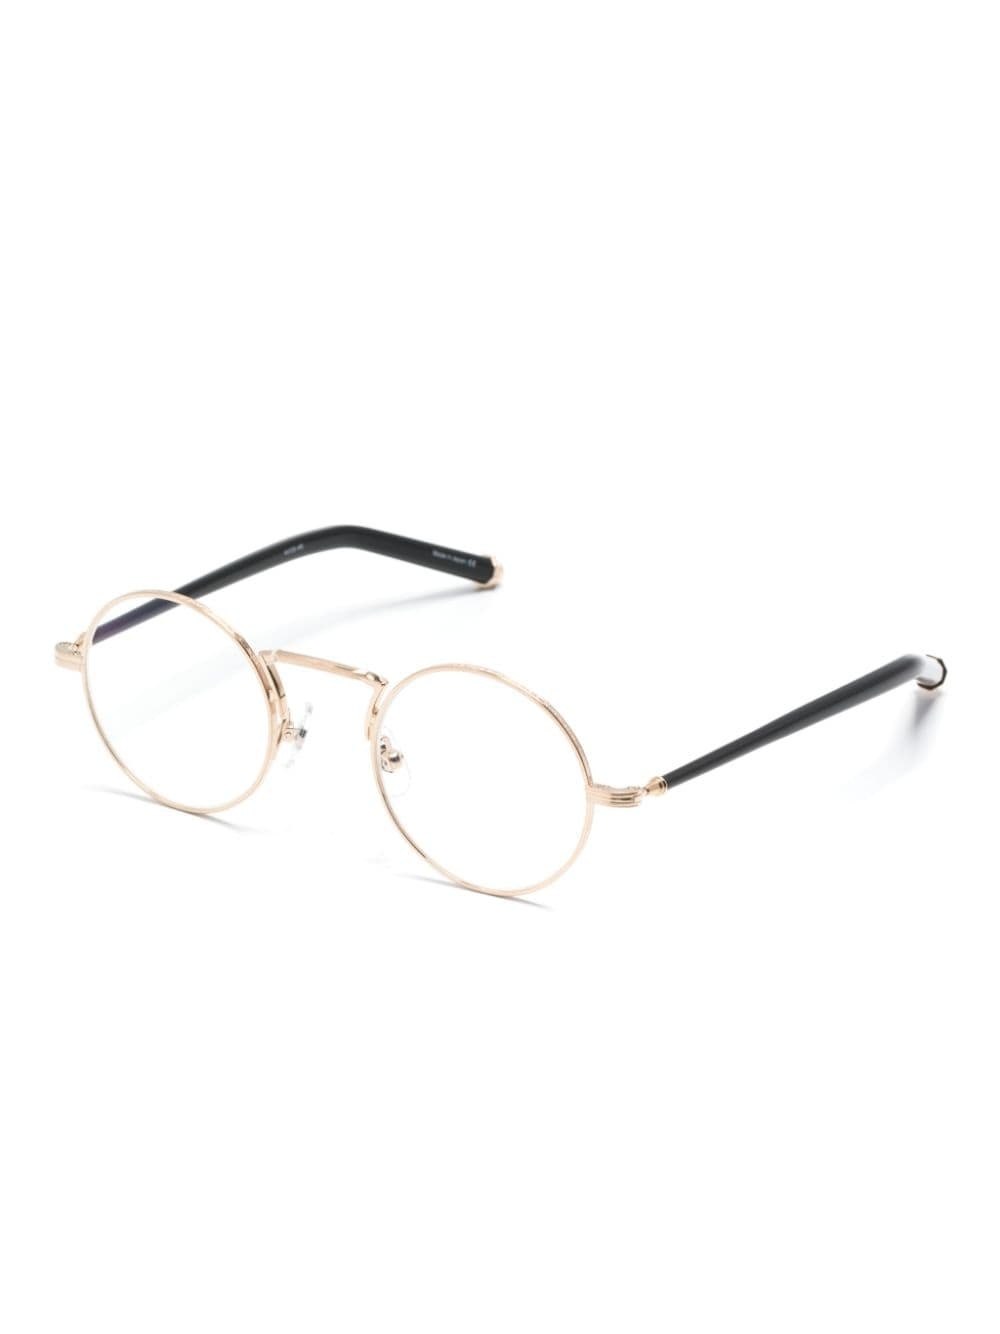 M3119 round-frame glasses - 2